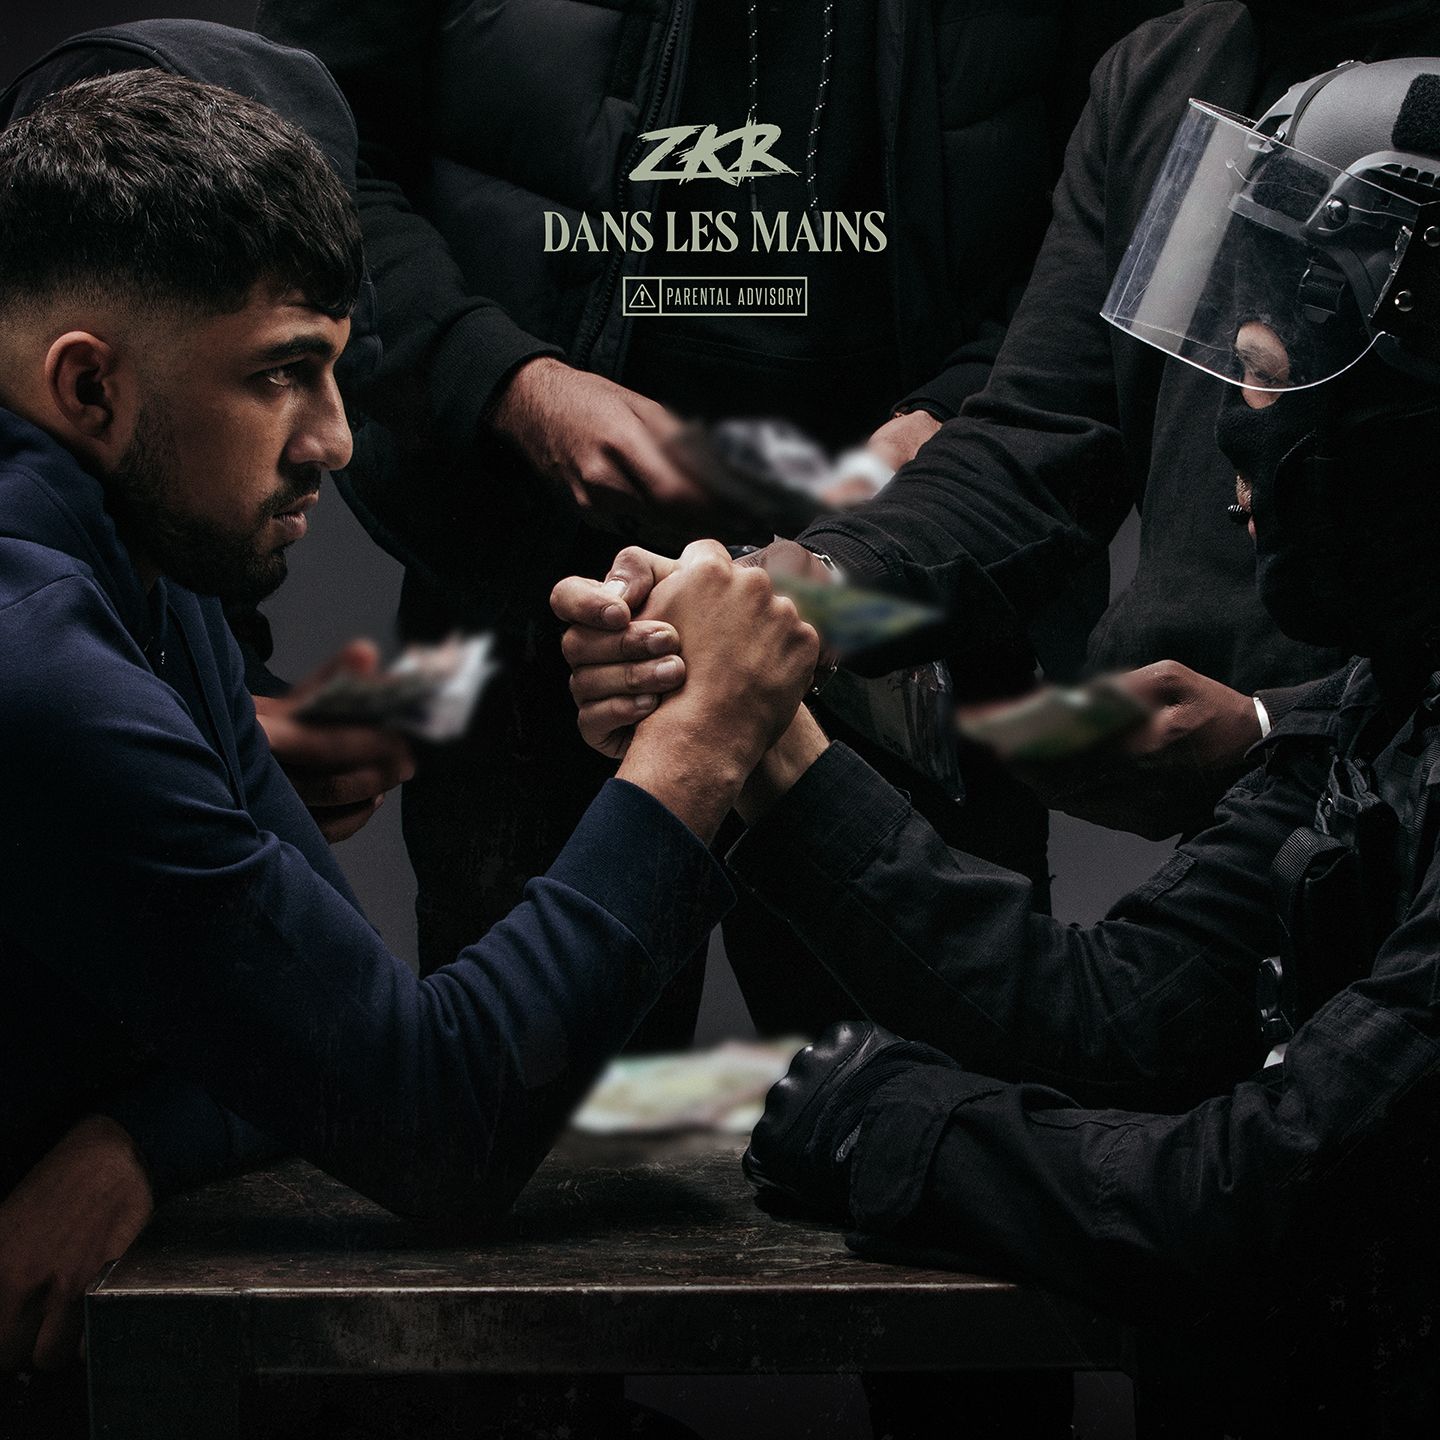 Zkr dévoile son premier album « Dans les mains »